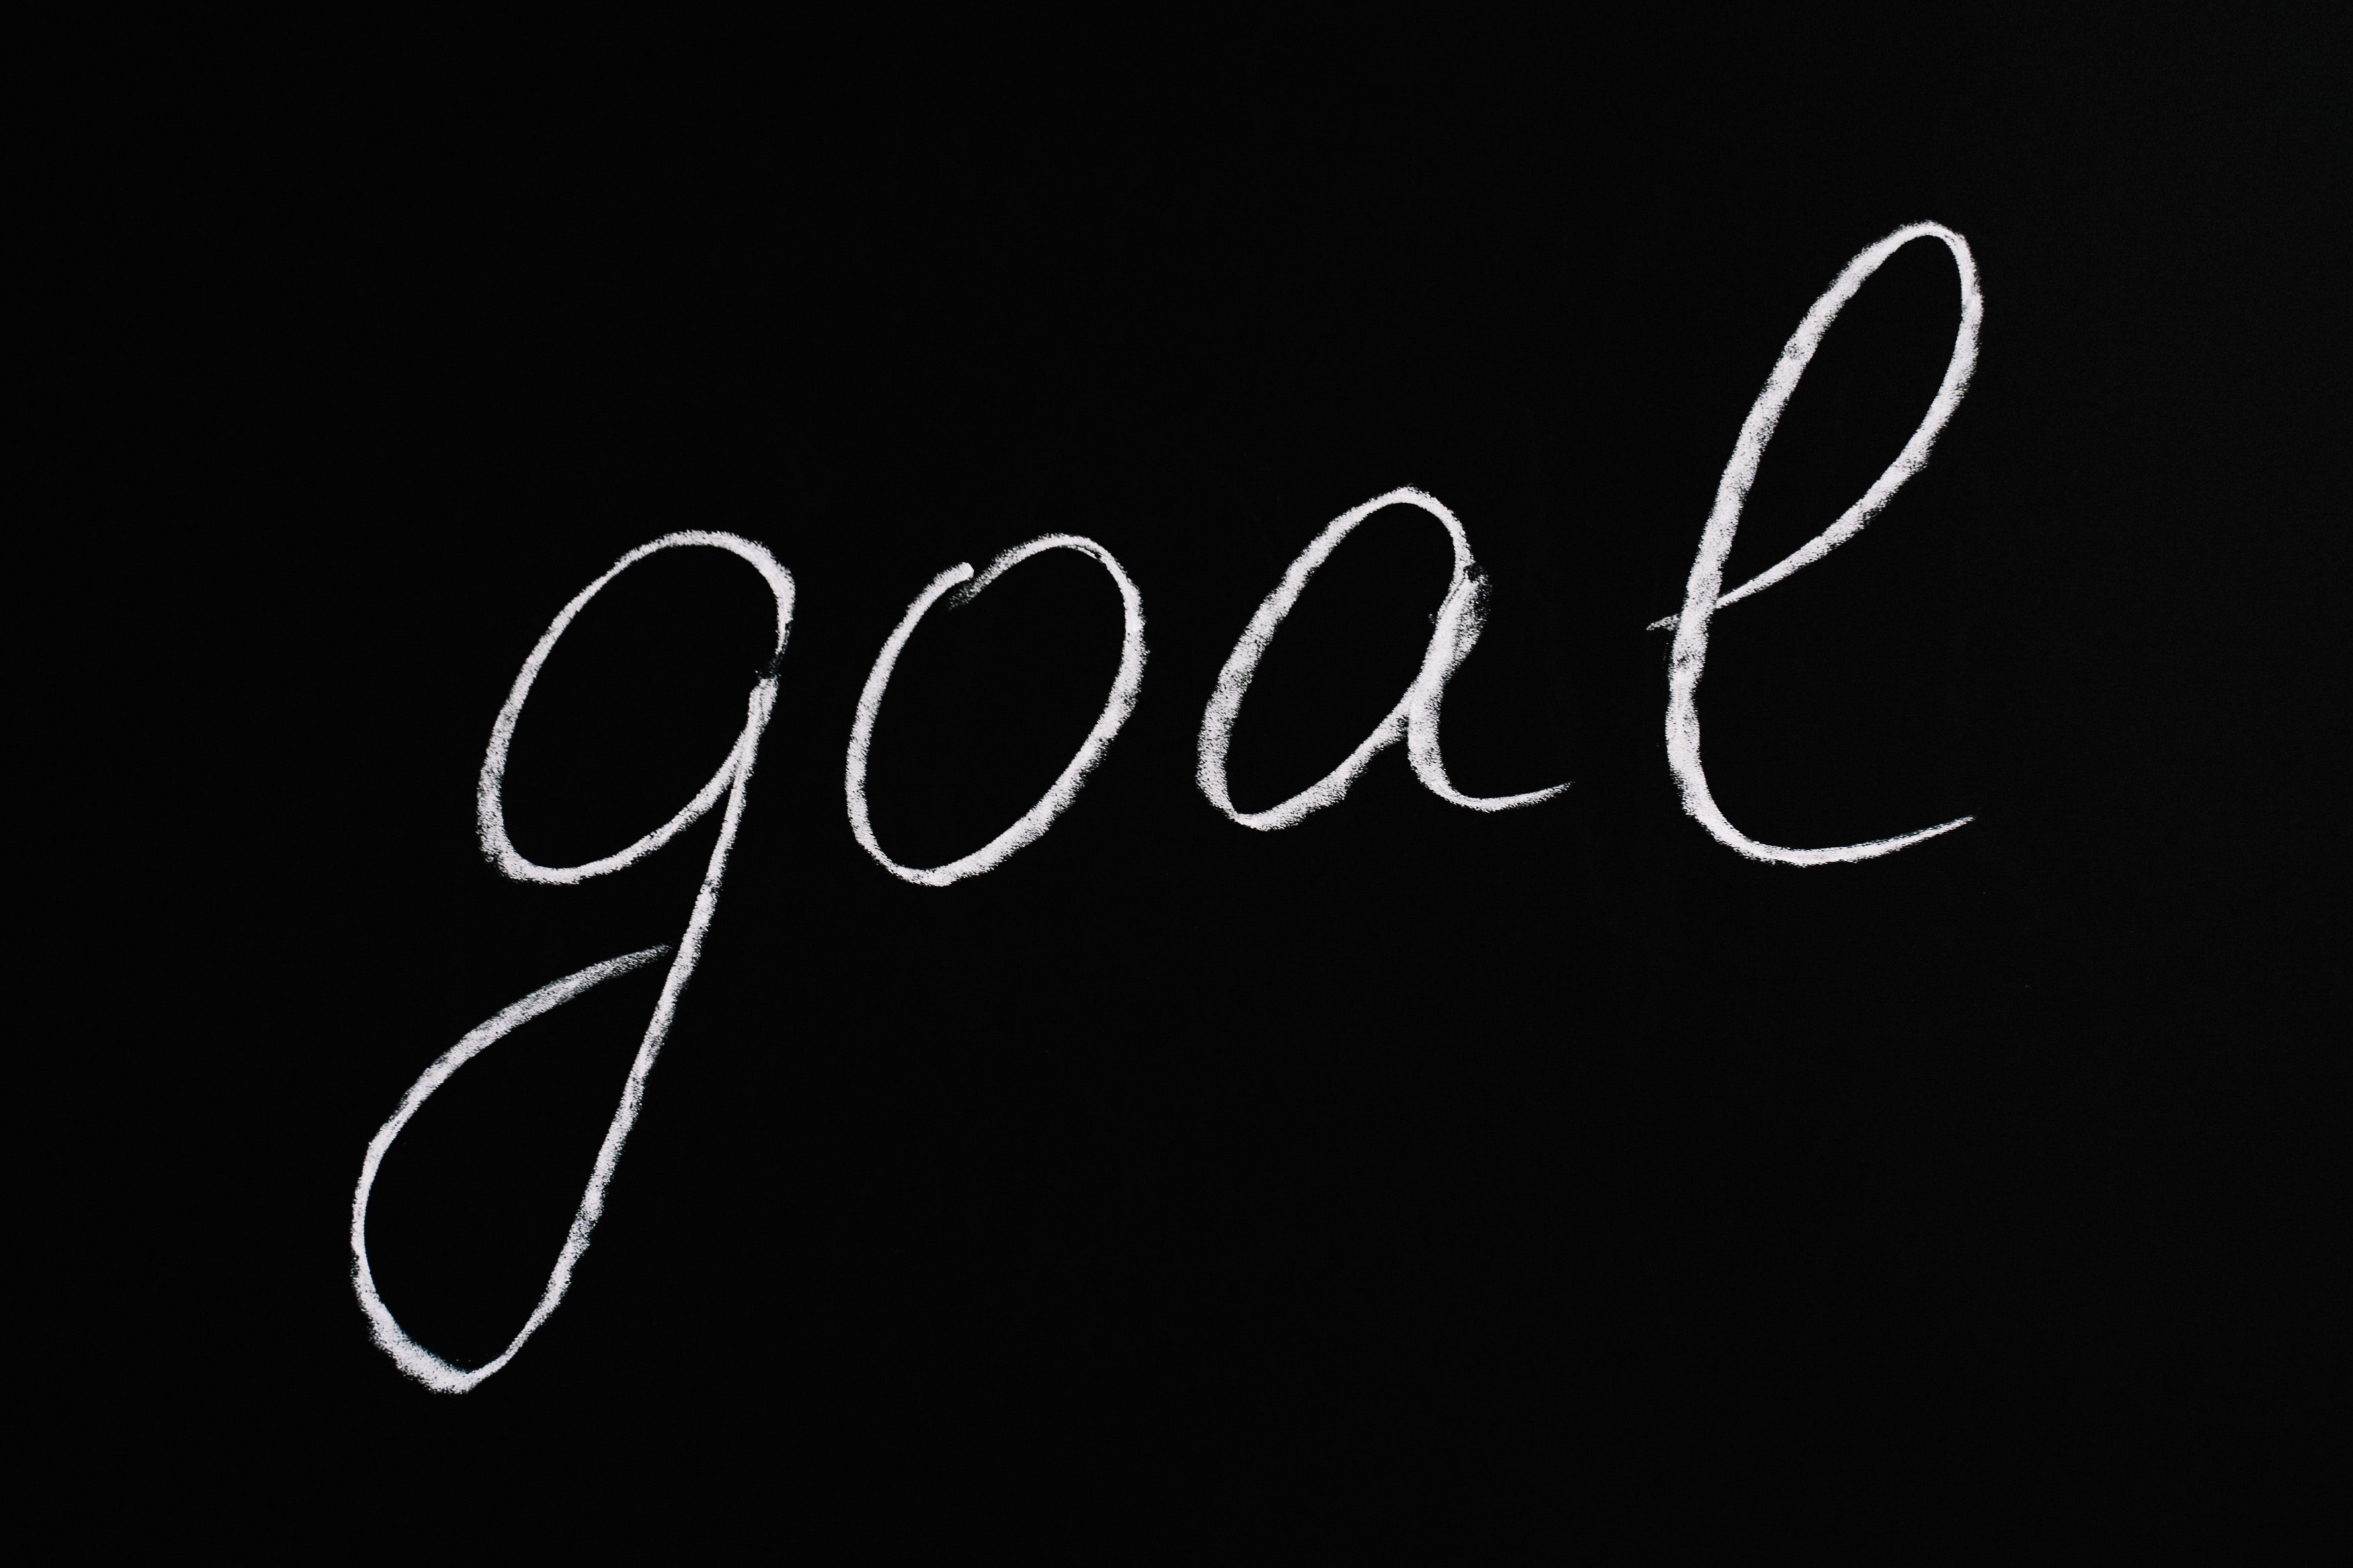 goal written on chalkboard